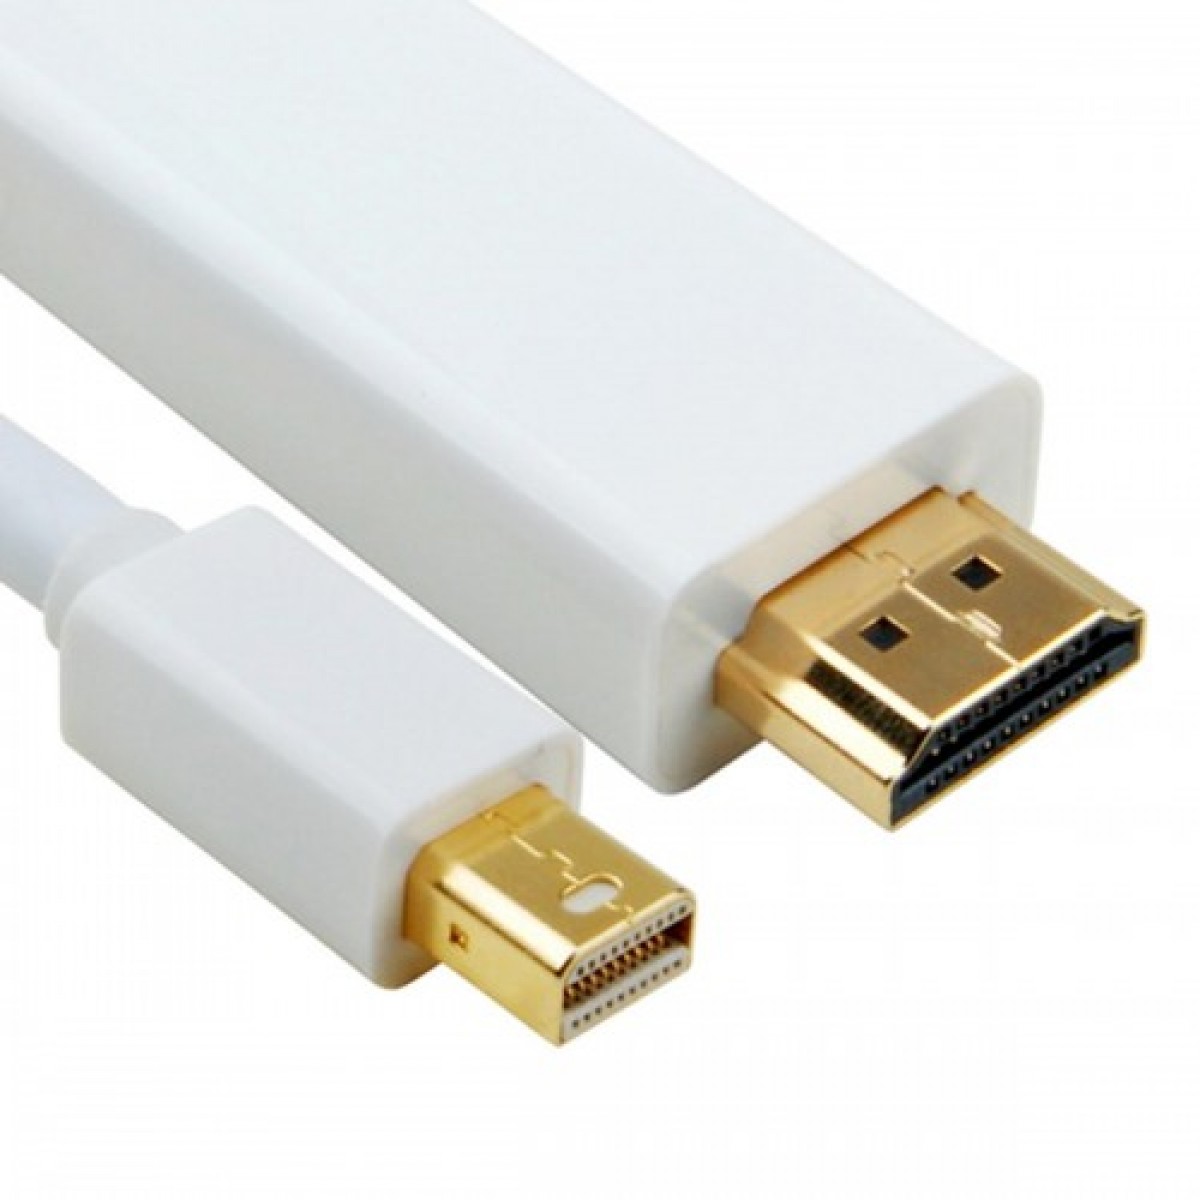 hdmi cord for macbook air